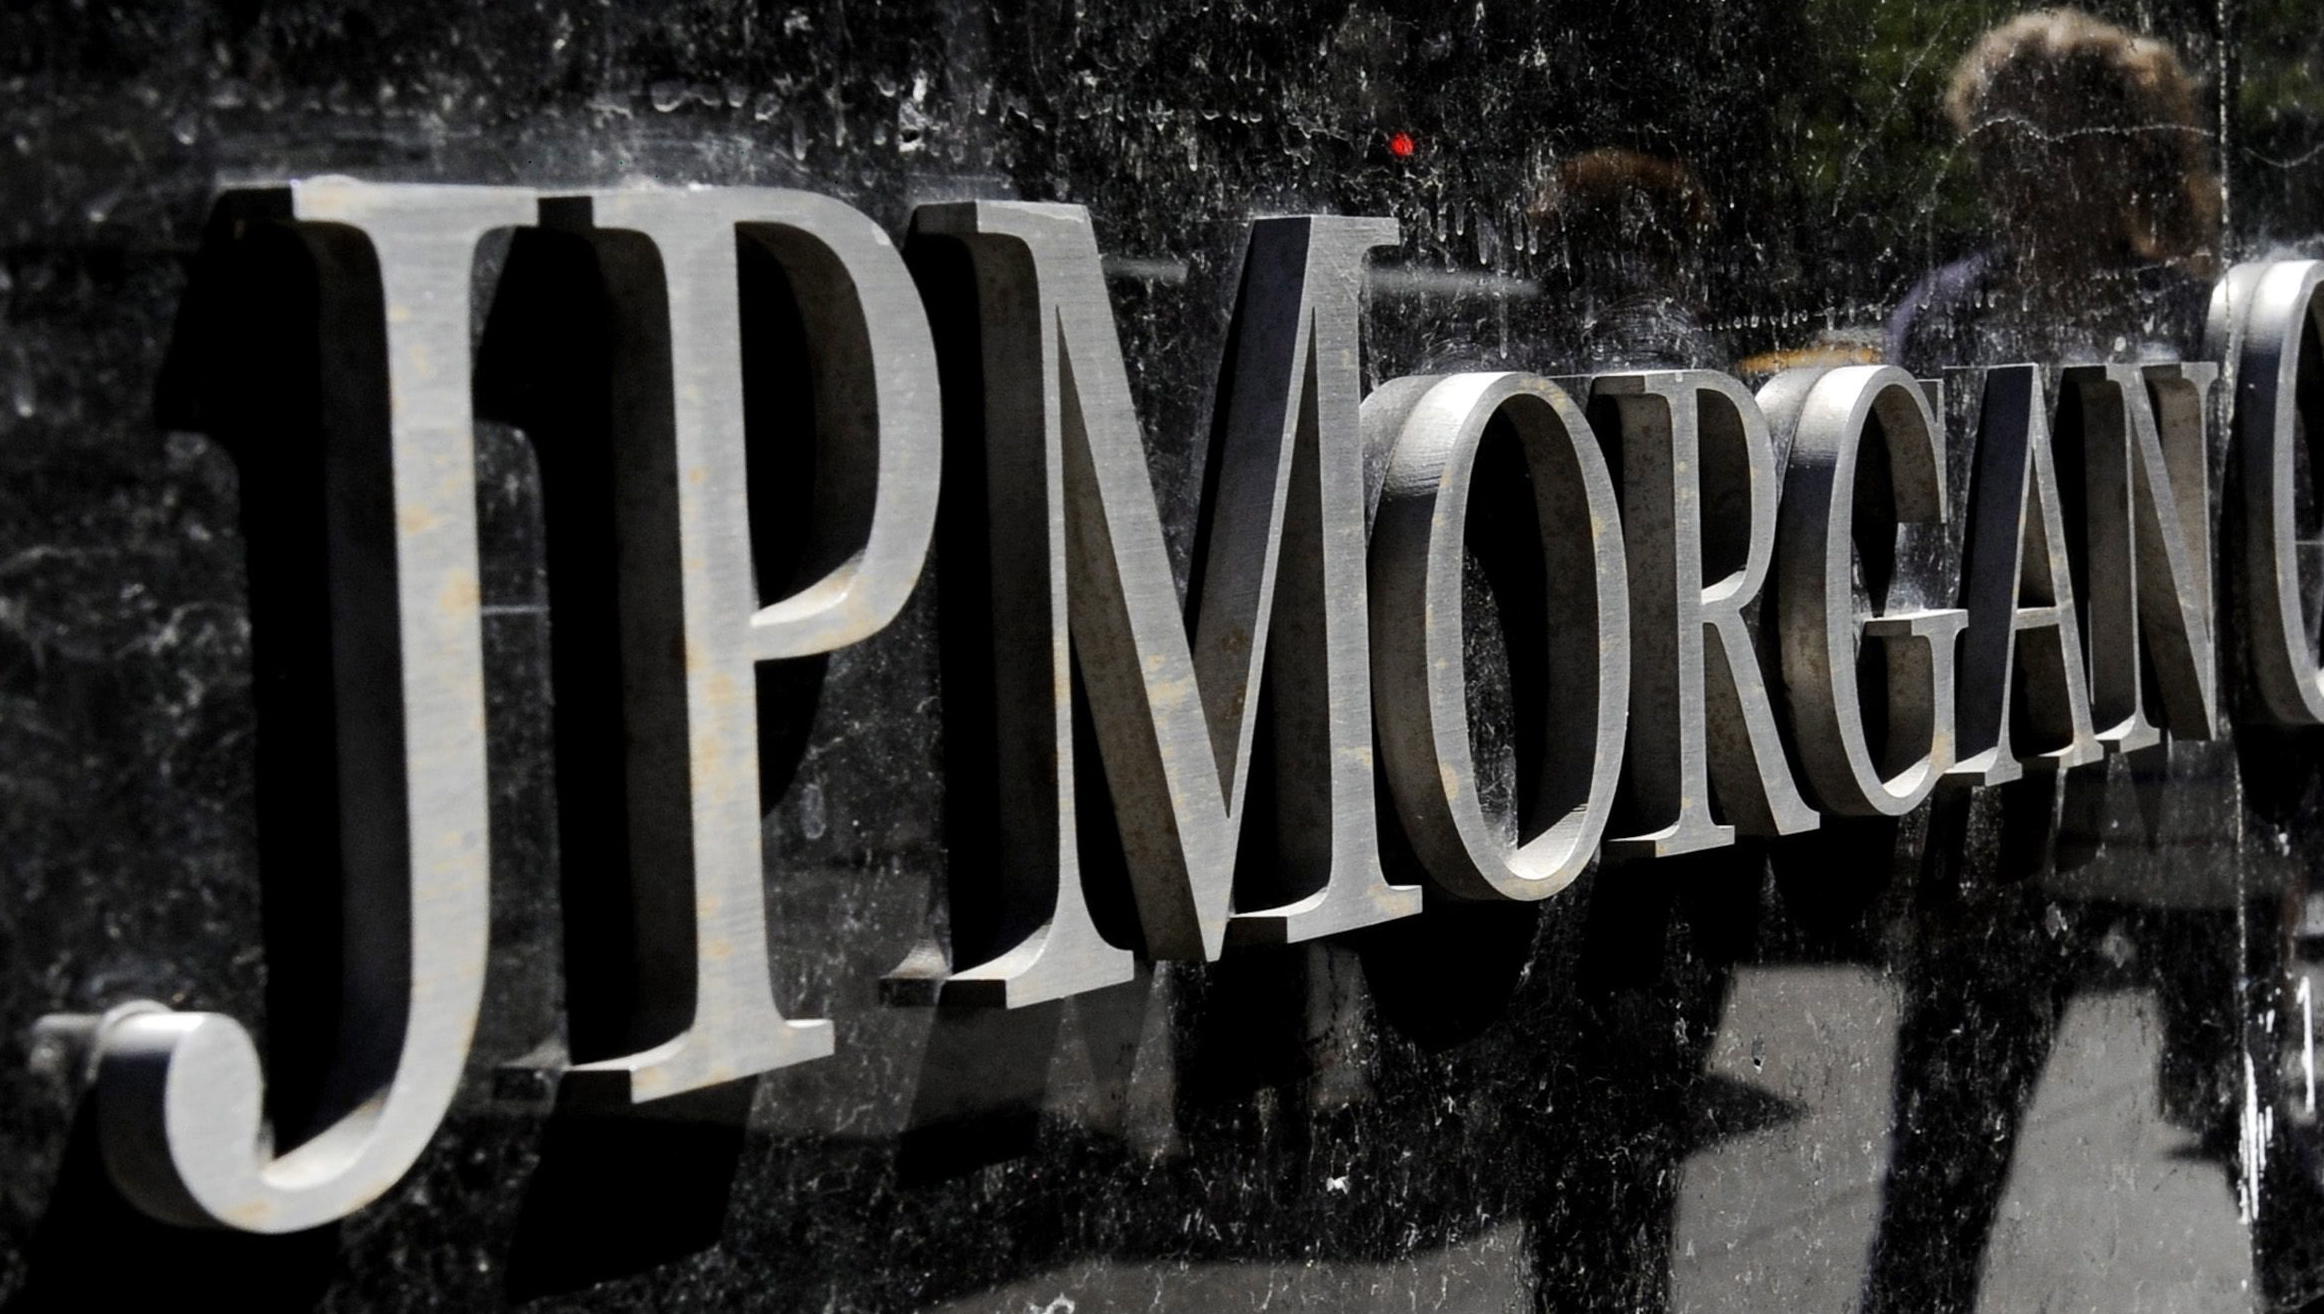 Trader von JPMorgen wegen Manipulatinonen des Gold-Markts verurteilt